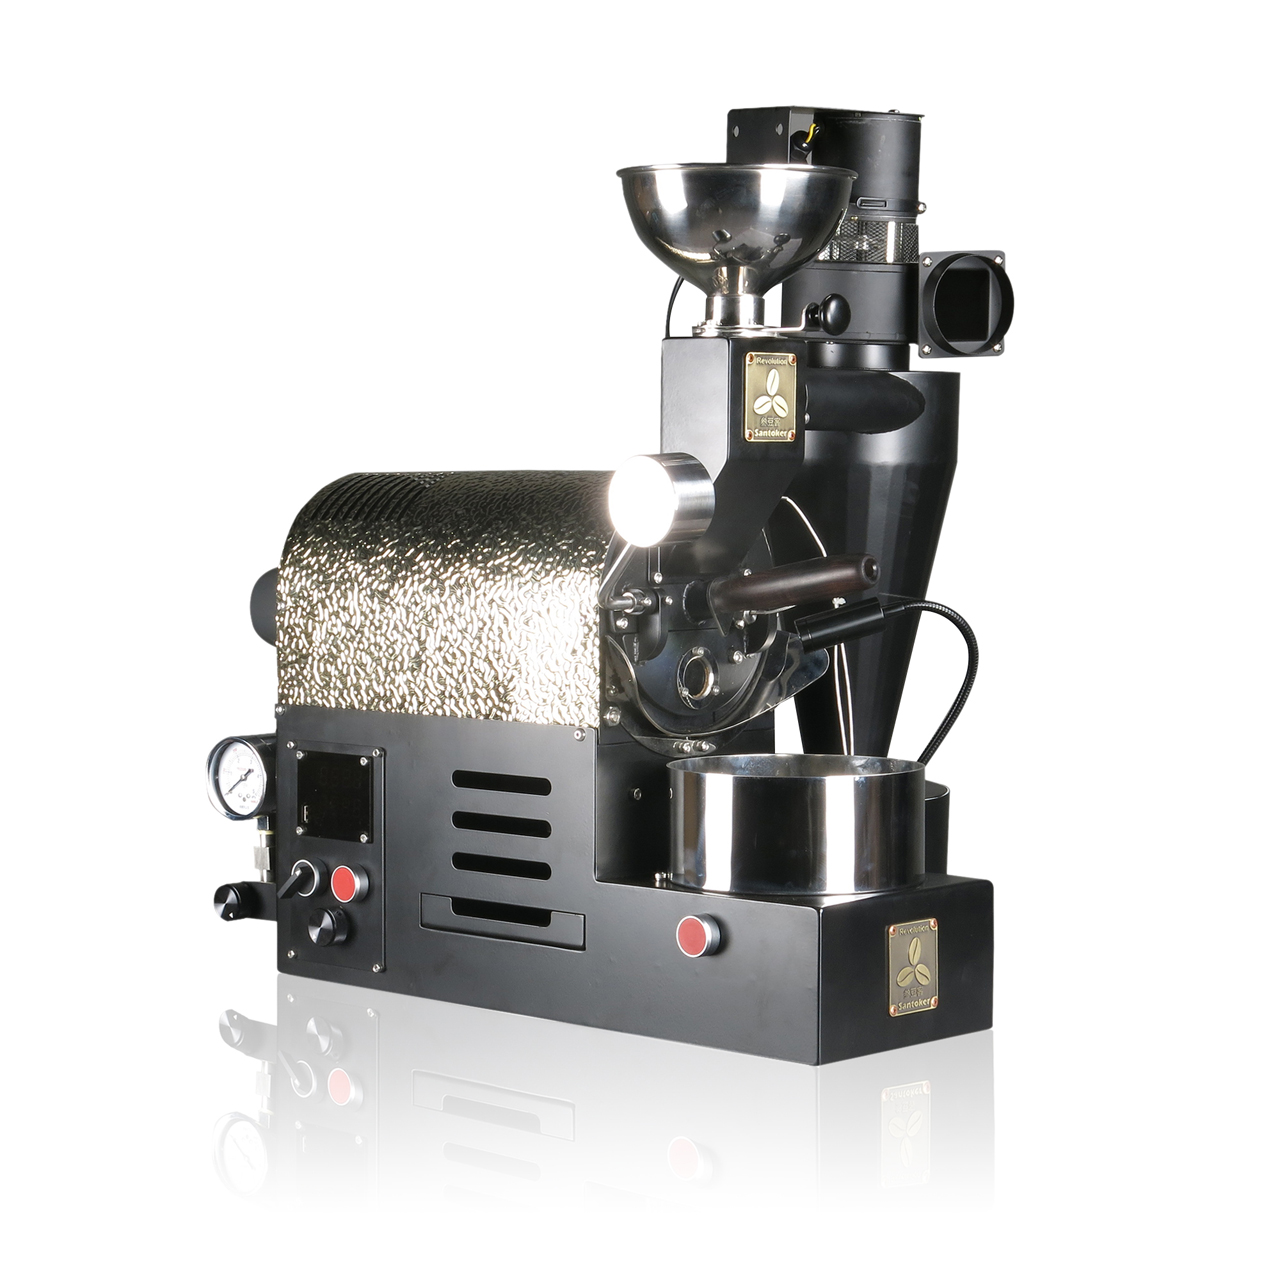 산두케 R200 소형 커피콩 로스터 홈 커피 샘플